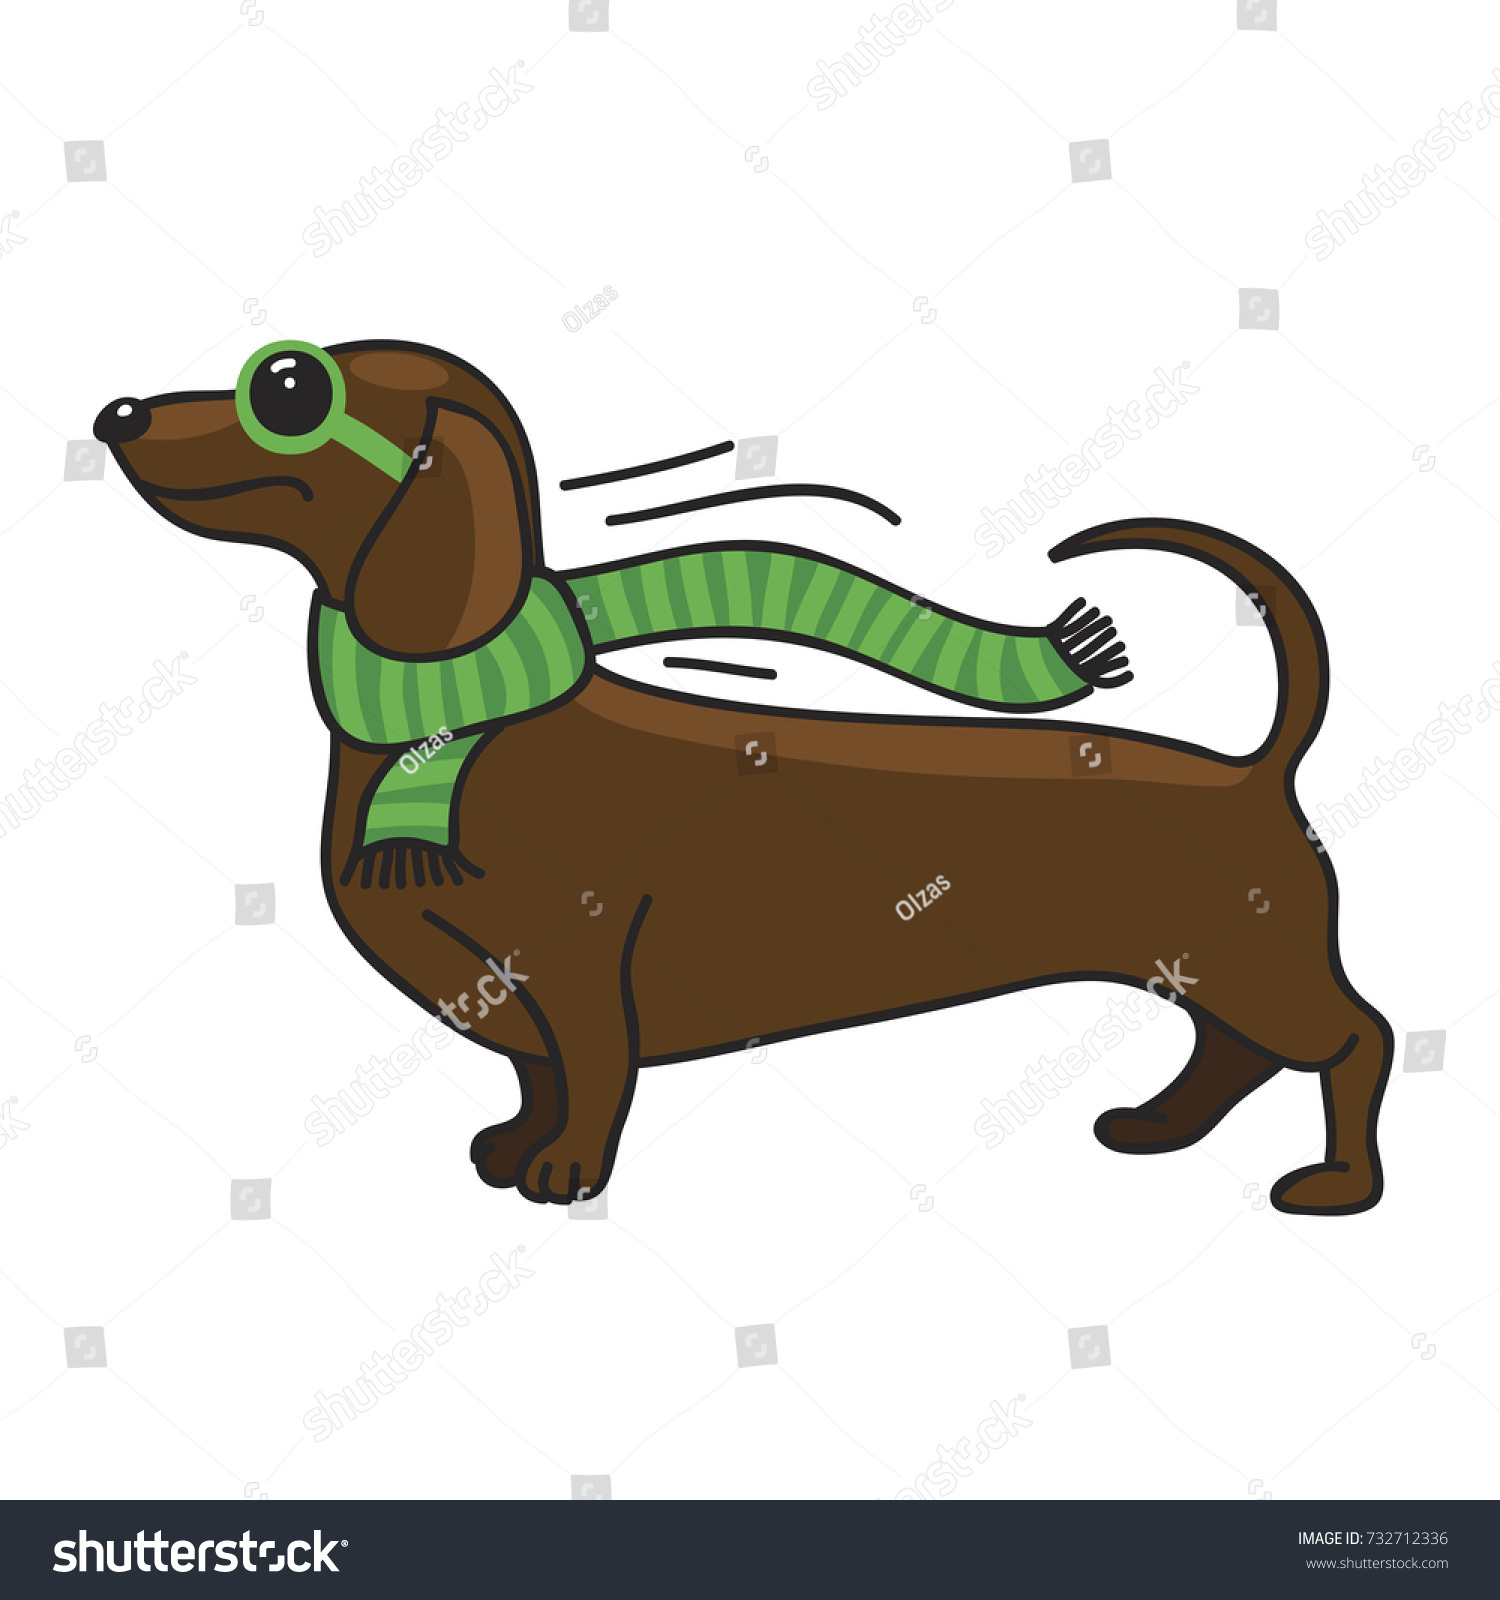 SVG of Dachshund. Dog illustration on a white background. svg